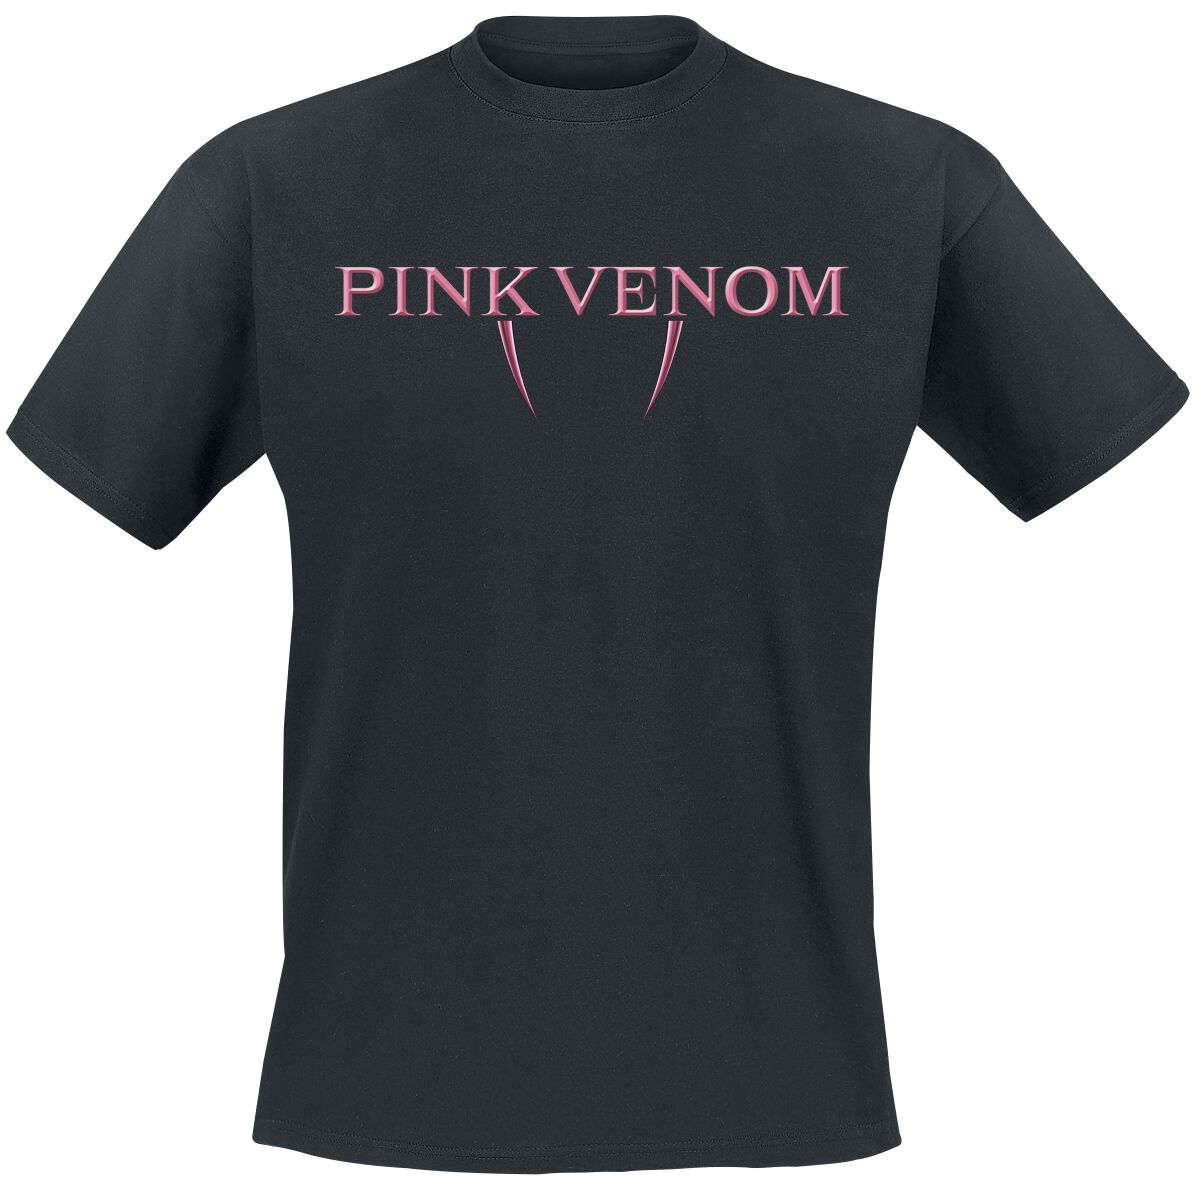 Blackpink T-Shirt - Pink Venom Fangs - M bis XL - für Männer - Größe L - schwarz  - Lizenziertes Merchandise!